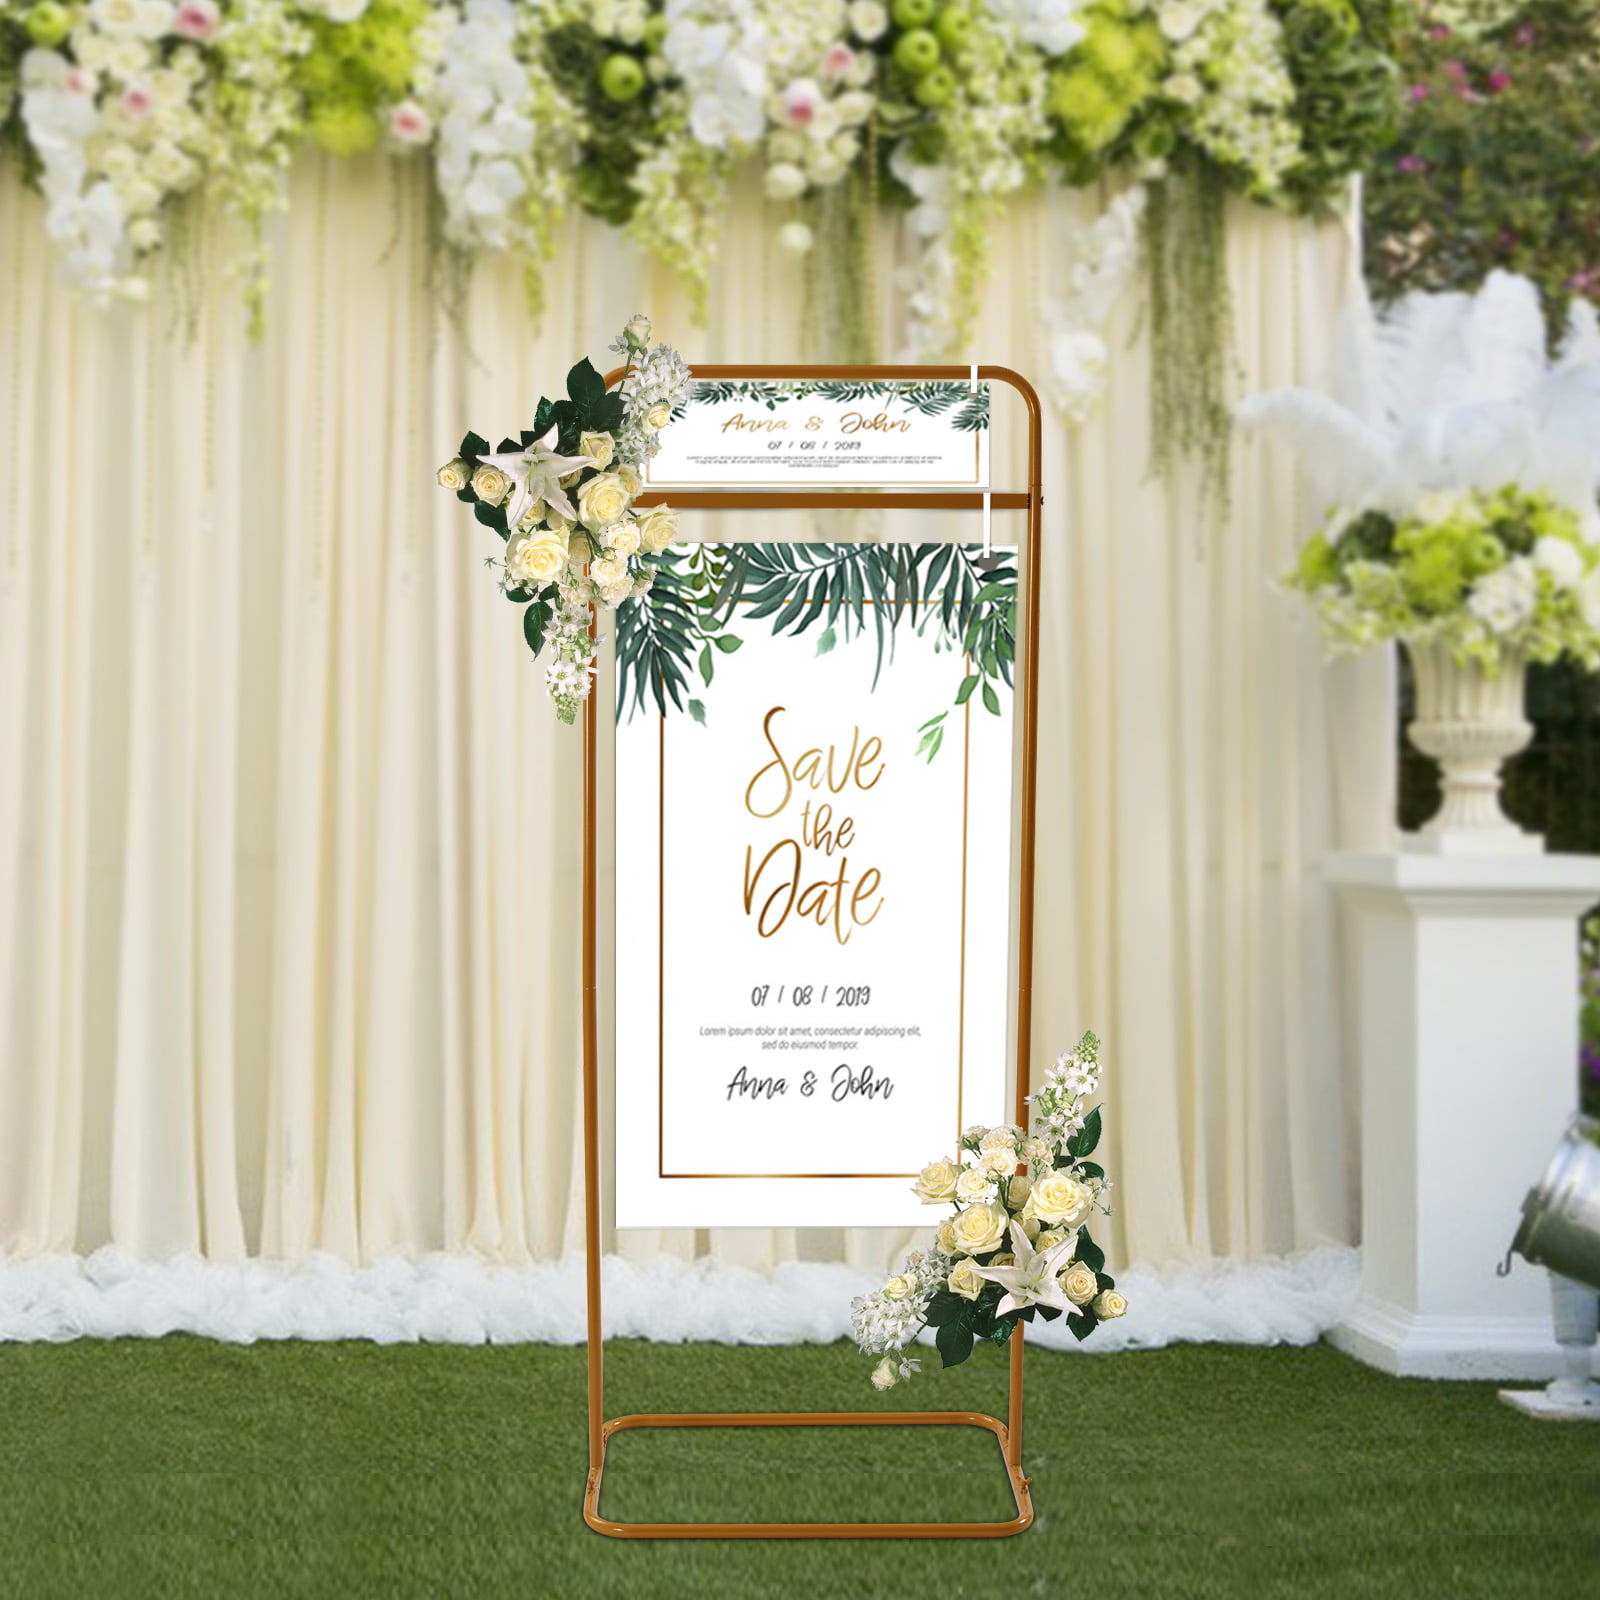 Bục dựng bảng chào đón đám cưới: Với một bảng chào đón đám cưới đầy sáng tạo và cá tính, bạn sẽ gây ấn tượng mạnh với khách mời của mình. Hãy cùng xem những hình ảnh về bục dựng bảng chào đón đám cưới để tìm ra ý tưởng phù hợp với phong cách của bạn. 